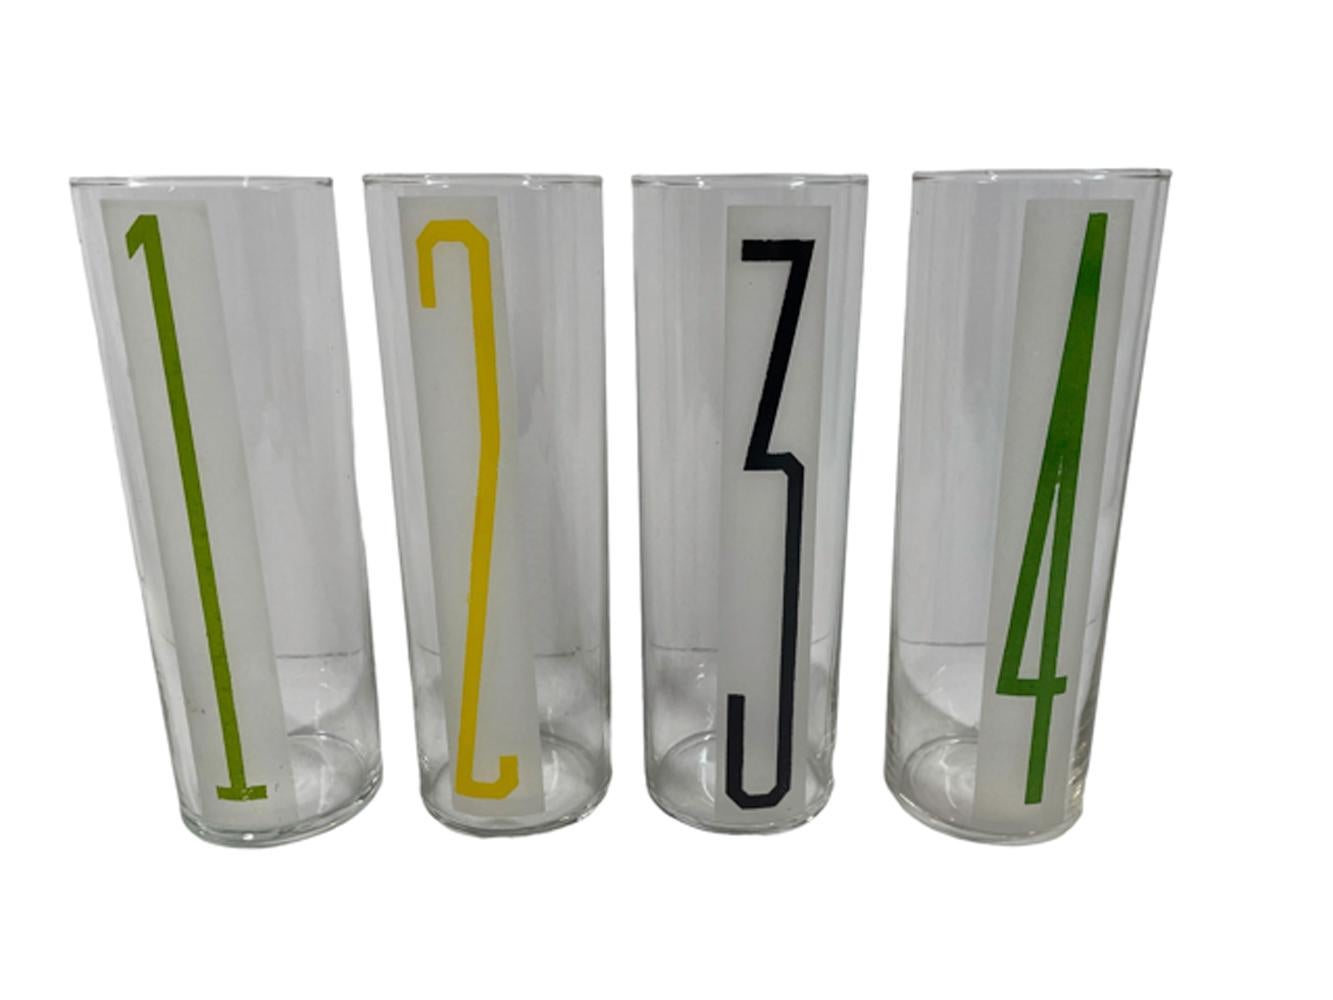 Ensemble de 8 verres Libbey Tom Collins en verre clair avec un panneau givré, chacun avec un chiffre de 1 à 8 dans une police de caractères stylisée et de différentes couleurs.